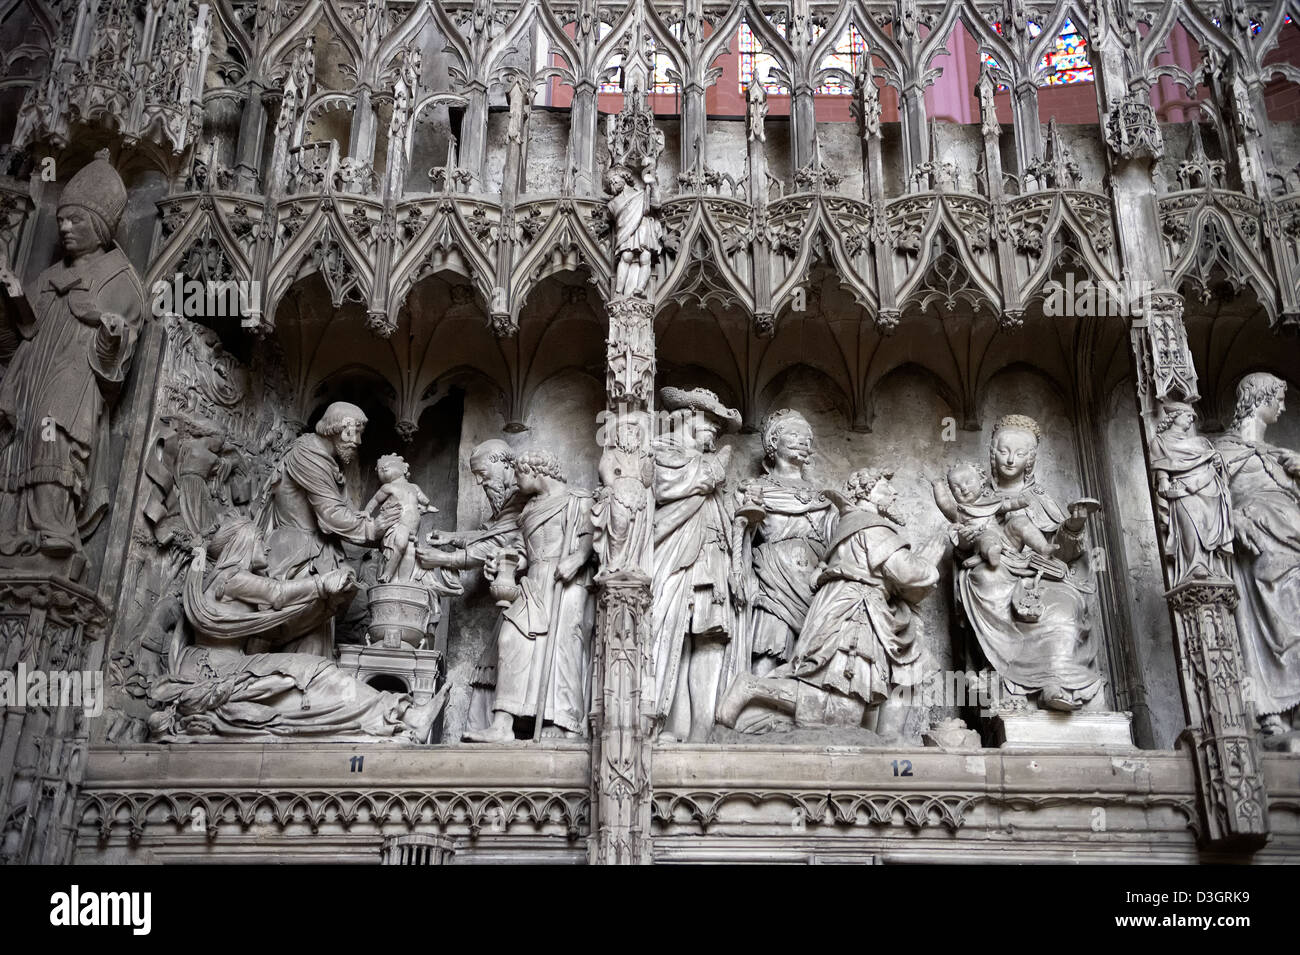 16e siècle choeur gothique flamboyant et écran déambulatoire de la cathédrale de Chartres, en France. Site du patrimoine mondial de l'UNESCO. Banque D'Images